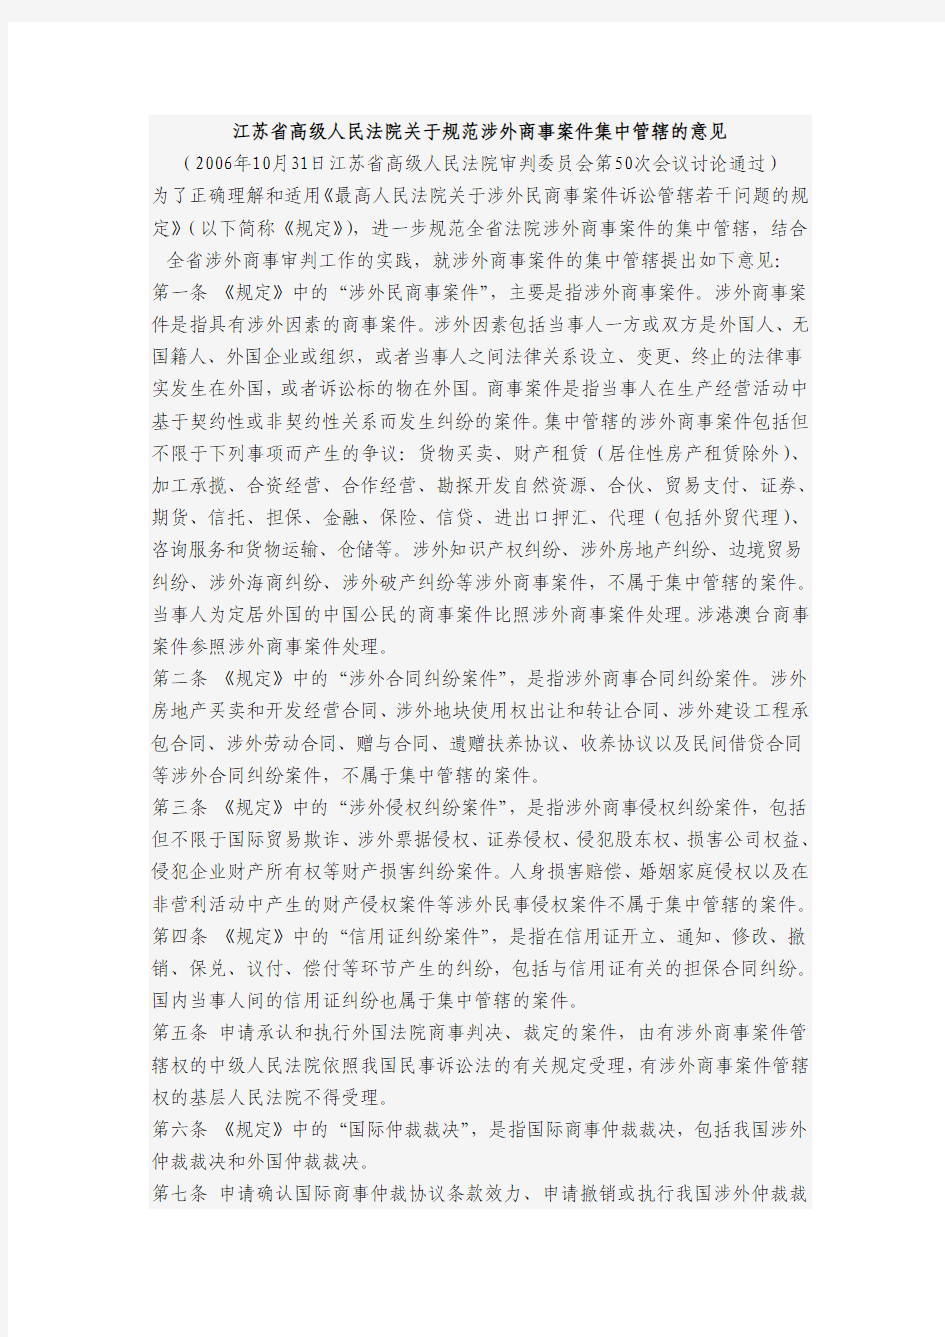 江苏省高级人民法院关于规范涉外商事案件集中管辖的意见